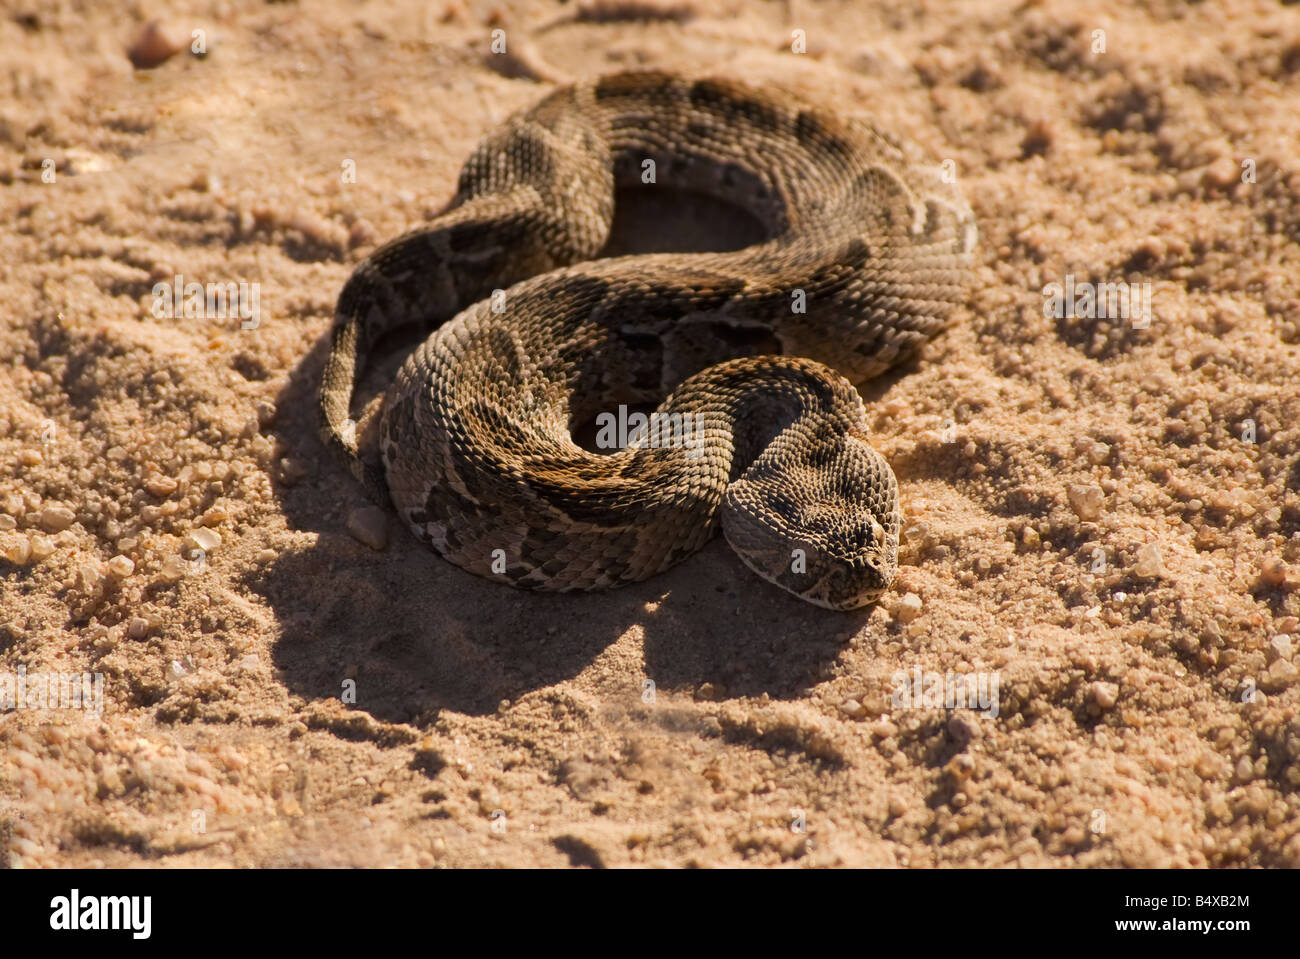 Portrait de serpent enroulé dans du sable Banque D'Images